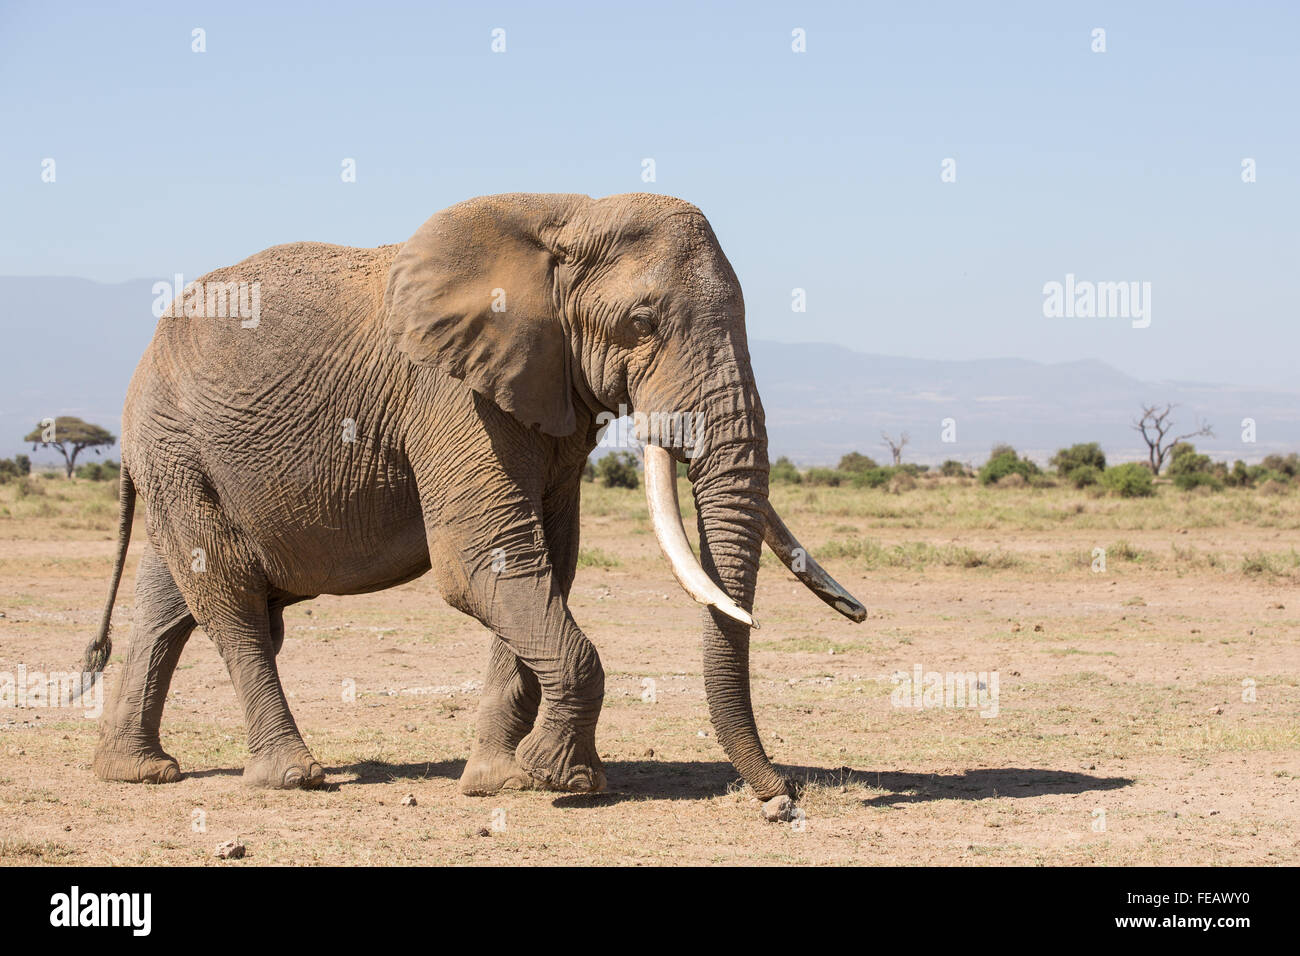 African Elephant Amboseli National Park Kenya Stock Photo